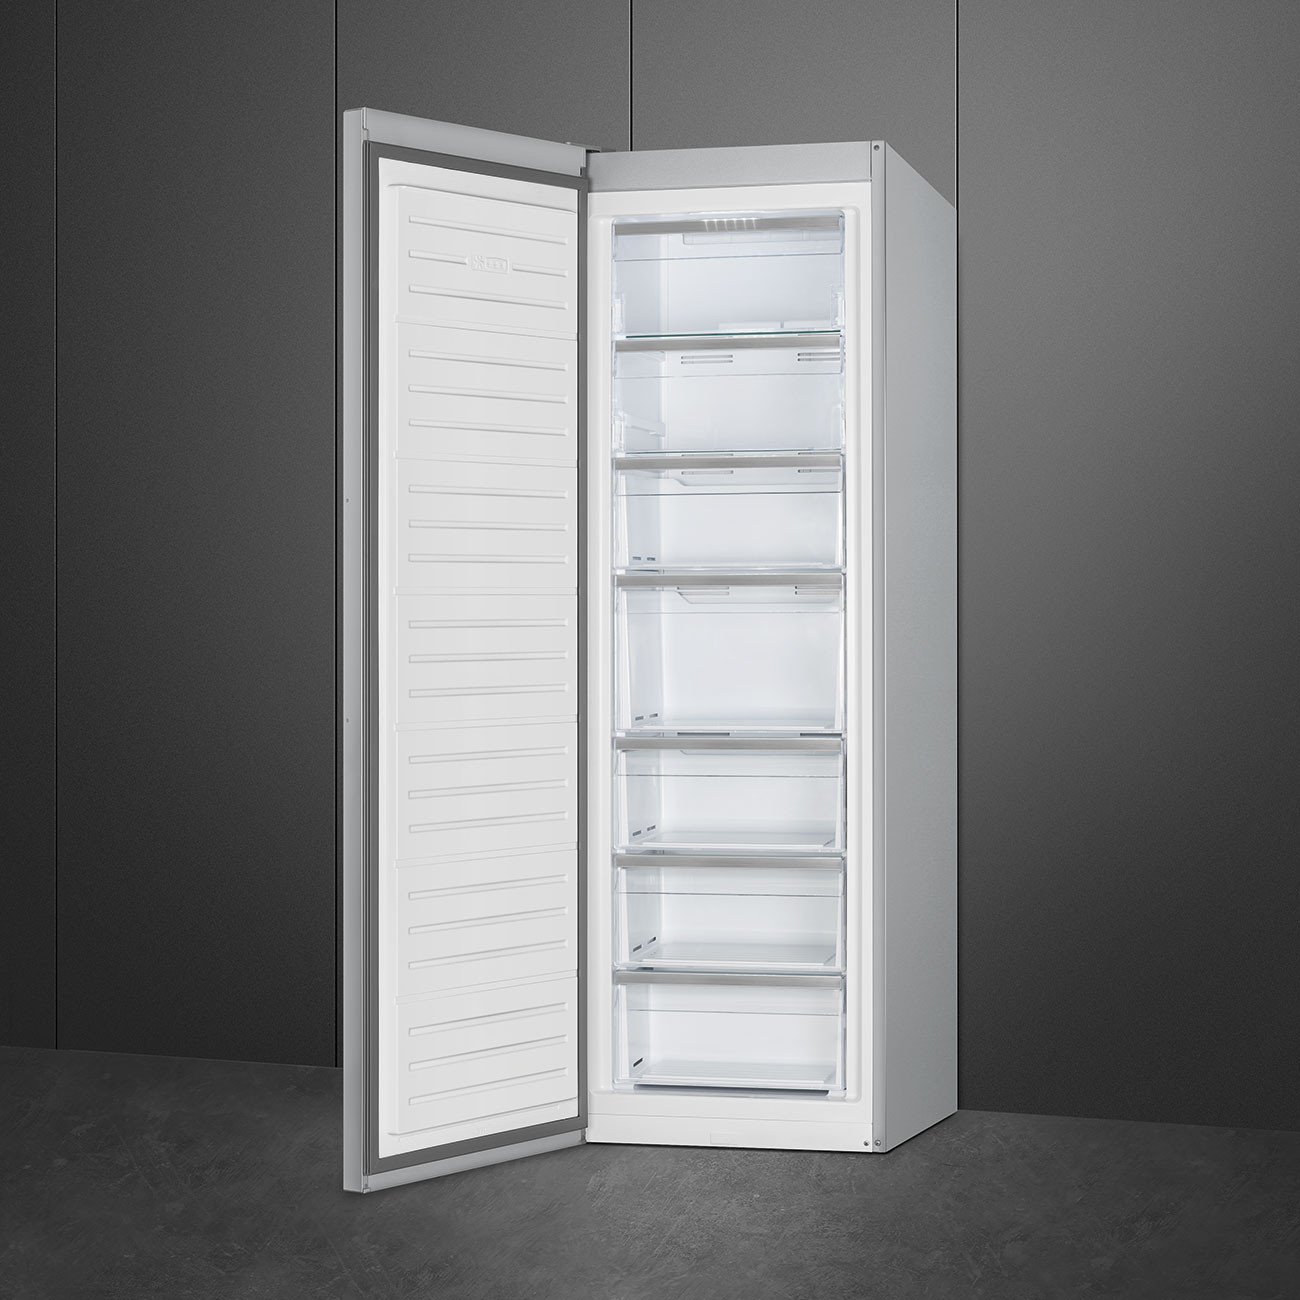 Single door Free Standing freezer- Smeg_2